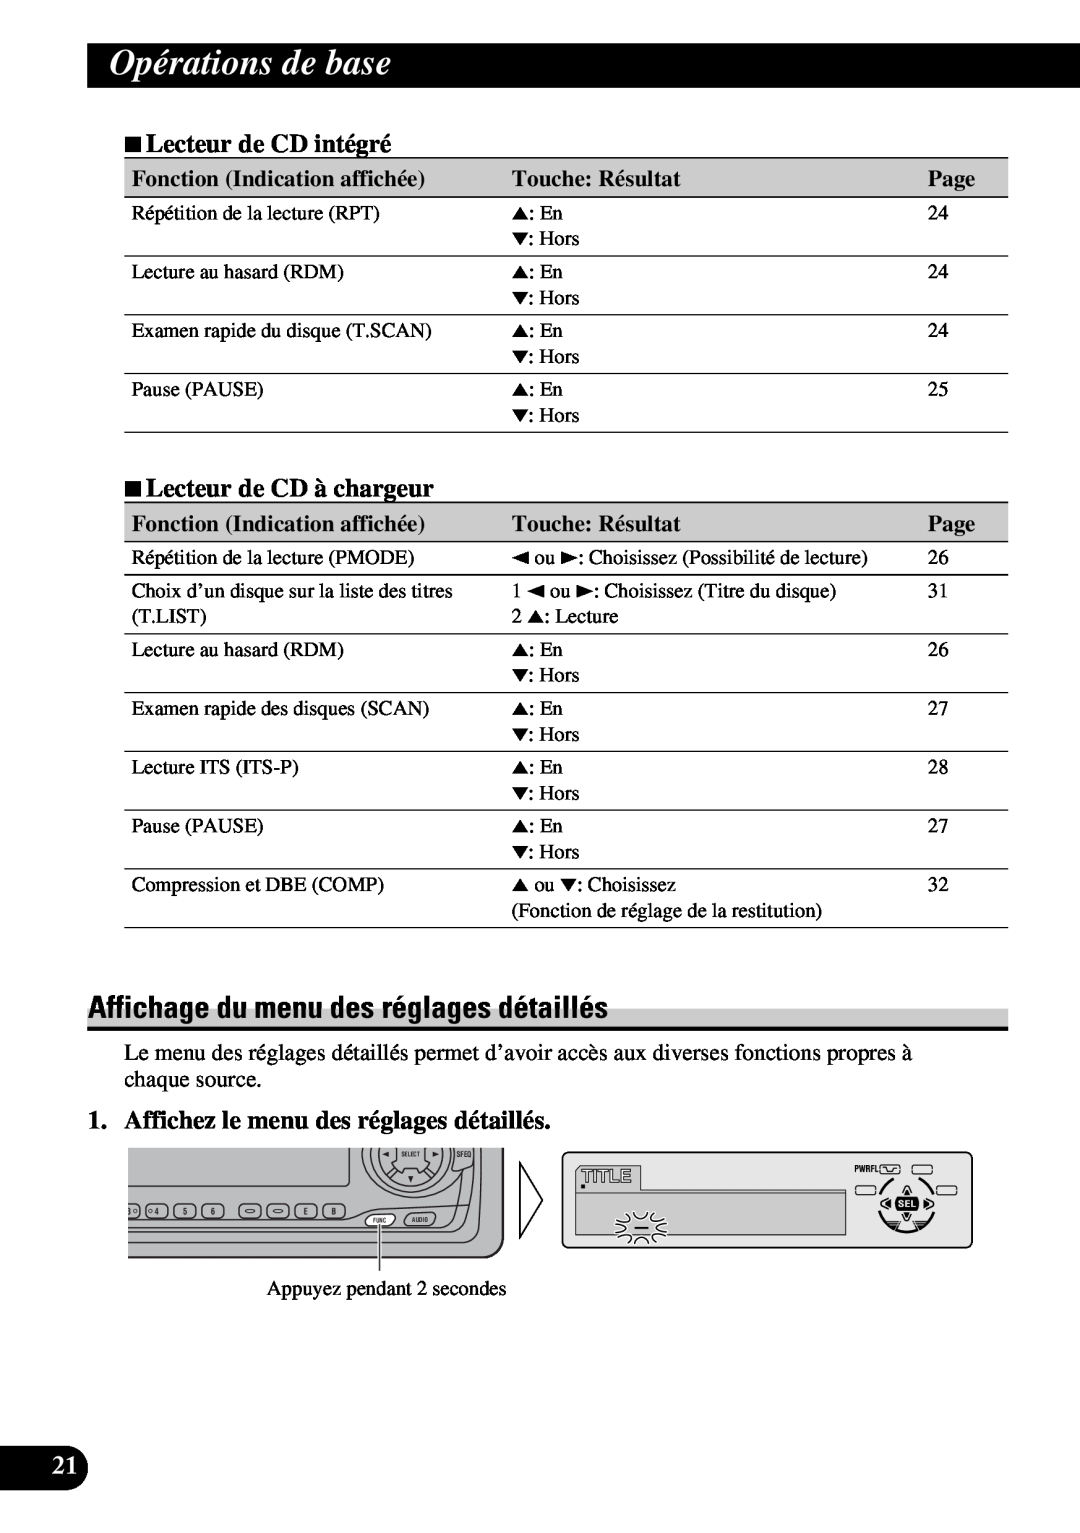 Pioneer DEH-P730 Affichage du menu des réglages détaillés, 7Lecteur de CD intégré, 7Lecteur de CD à chargeur, Page 